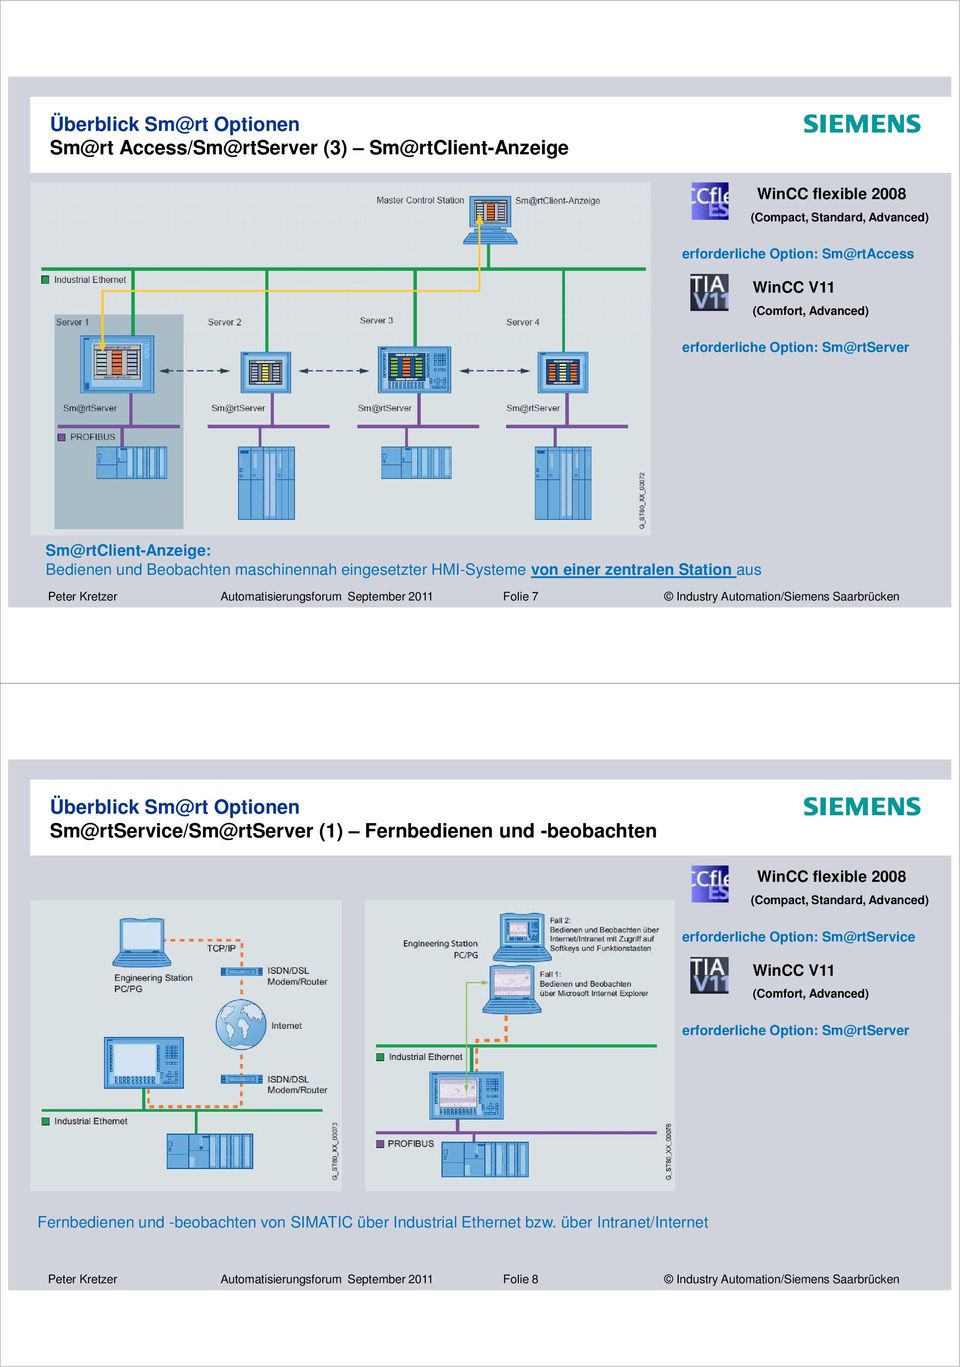 Automation/Siemens Saarbrücken Sm@rtService/Sm@rtServer () Fernbedienen und -beobachten WinCC flexible 2008 (Compact, Standard, Advanced) erforderliche Option: Sm@rtService (Comfort, Advanced)